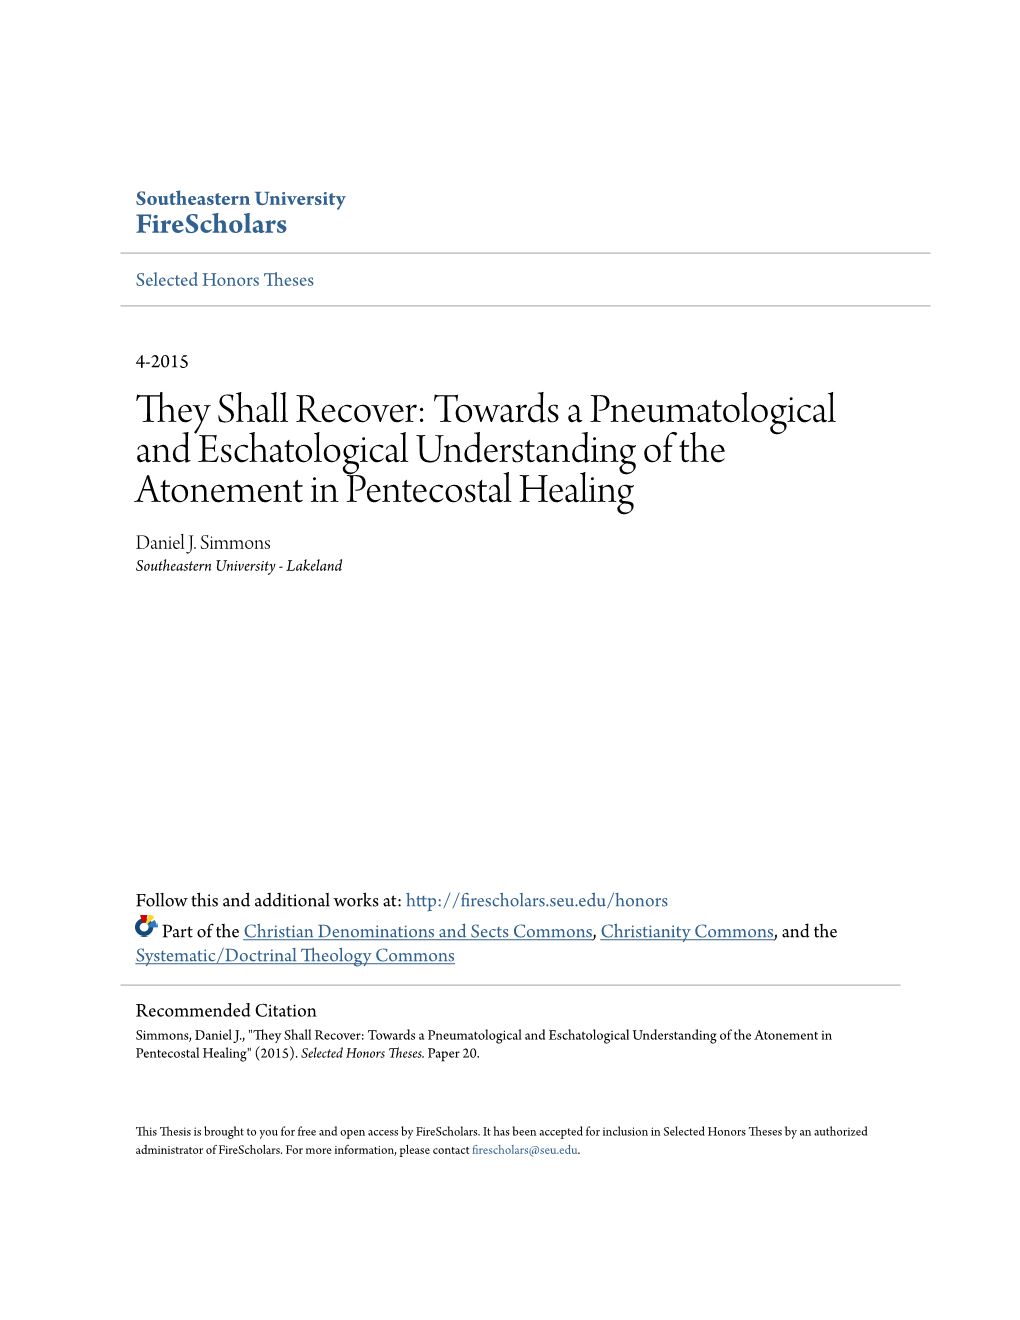 Towards a Pneumatological and Eschatological Understanding of the Atonement in Pentecostal Healing Daniel J